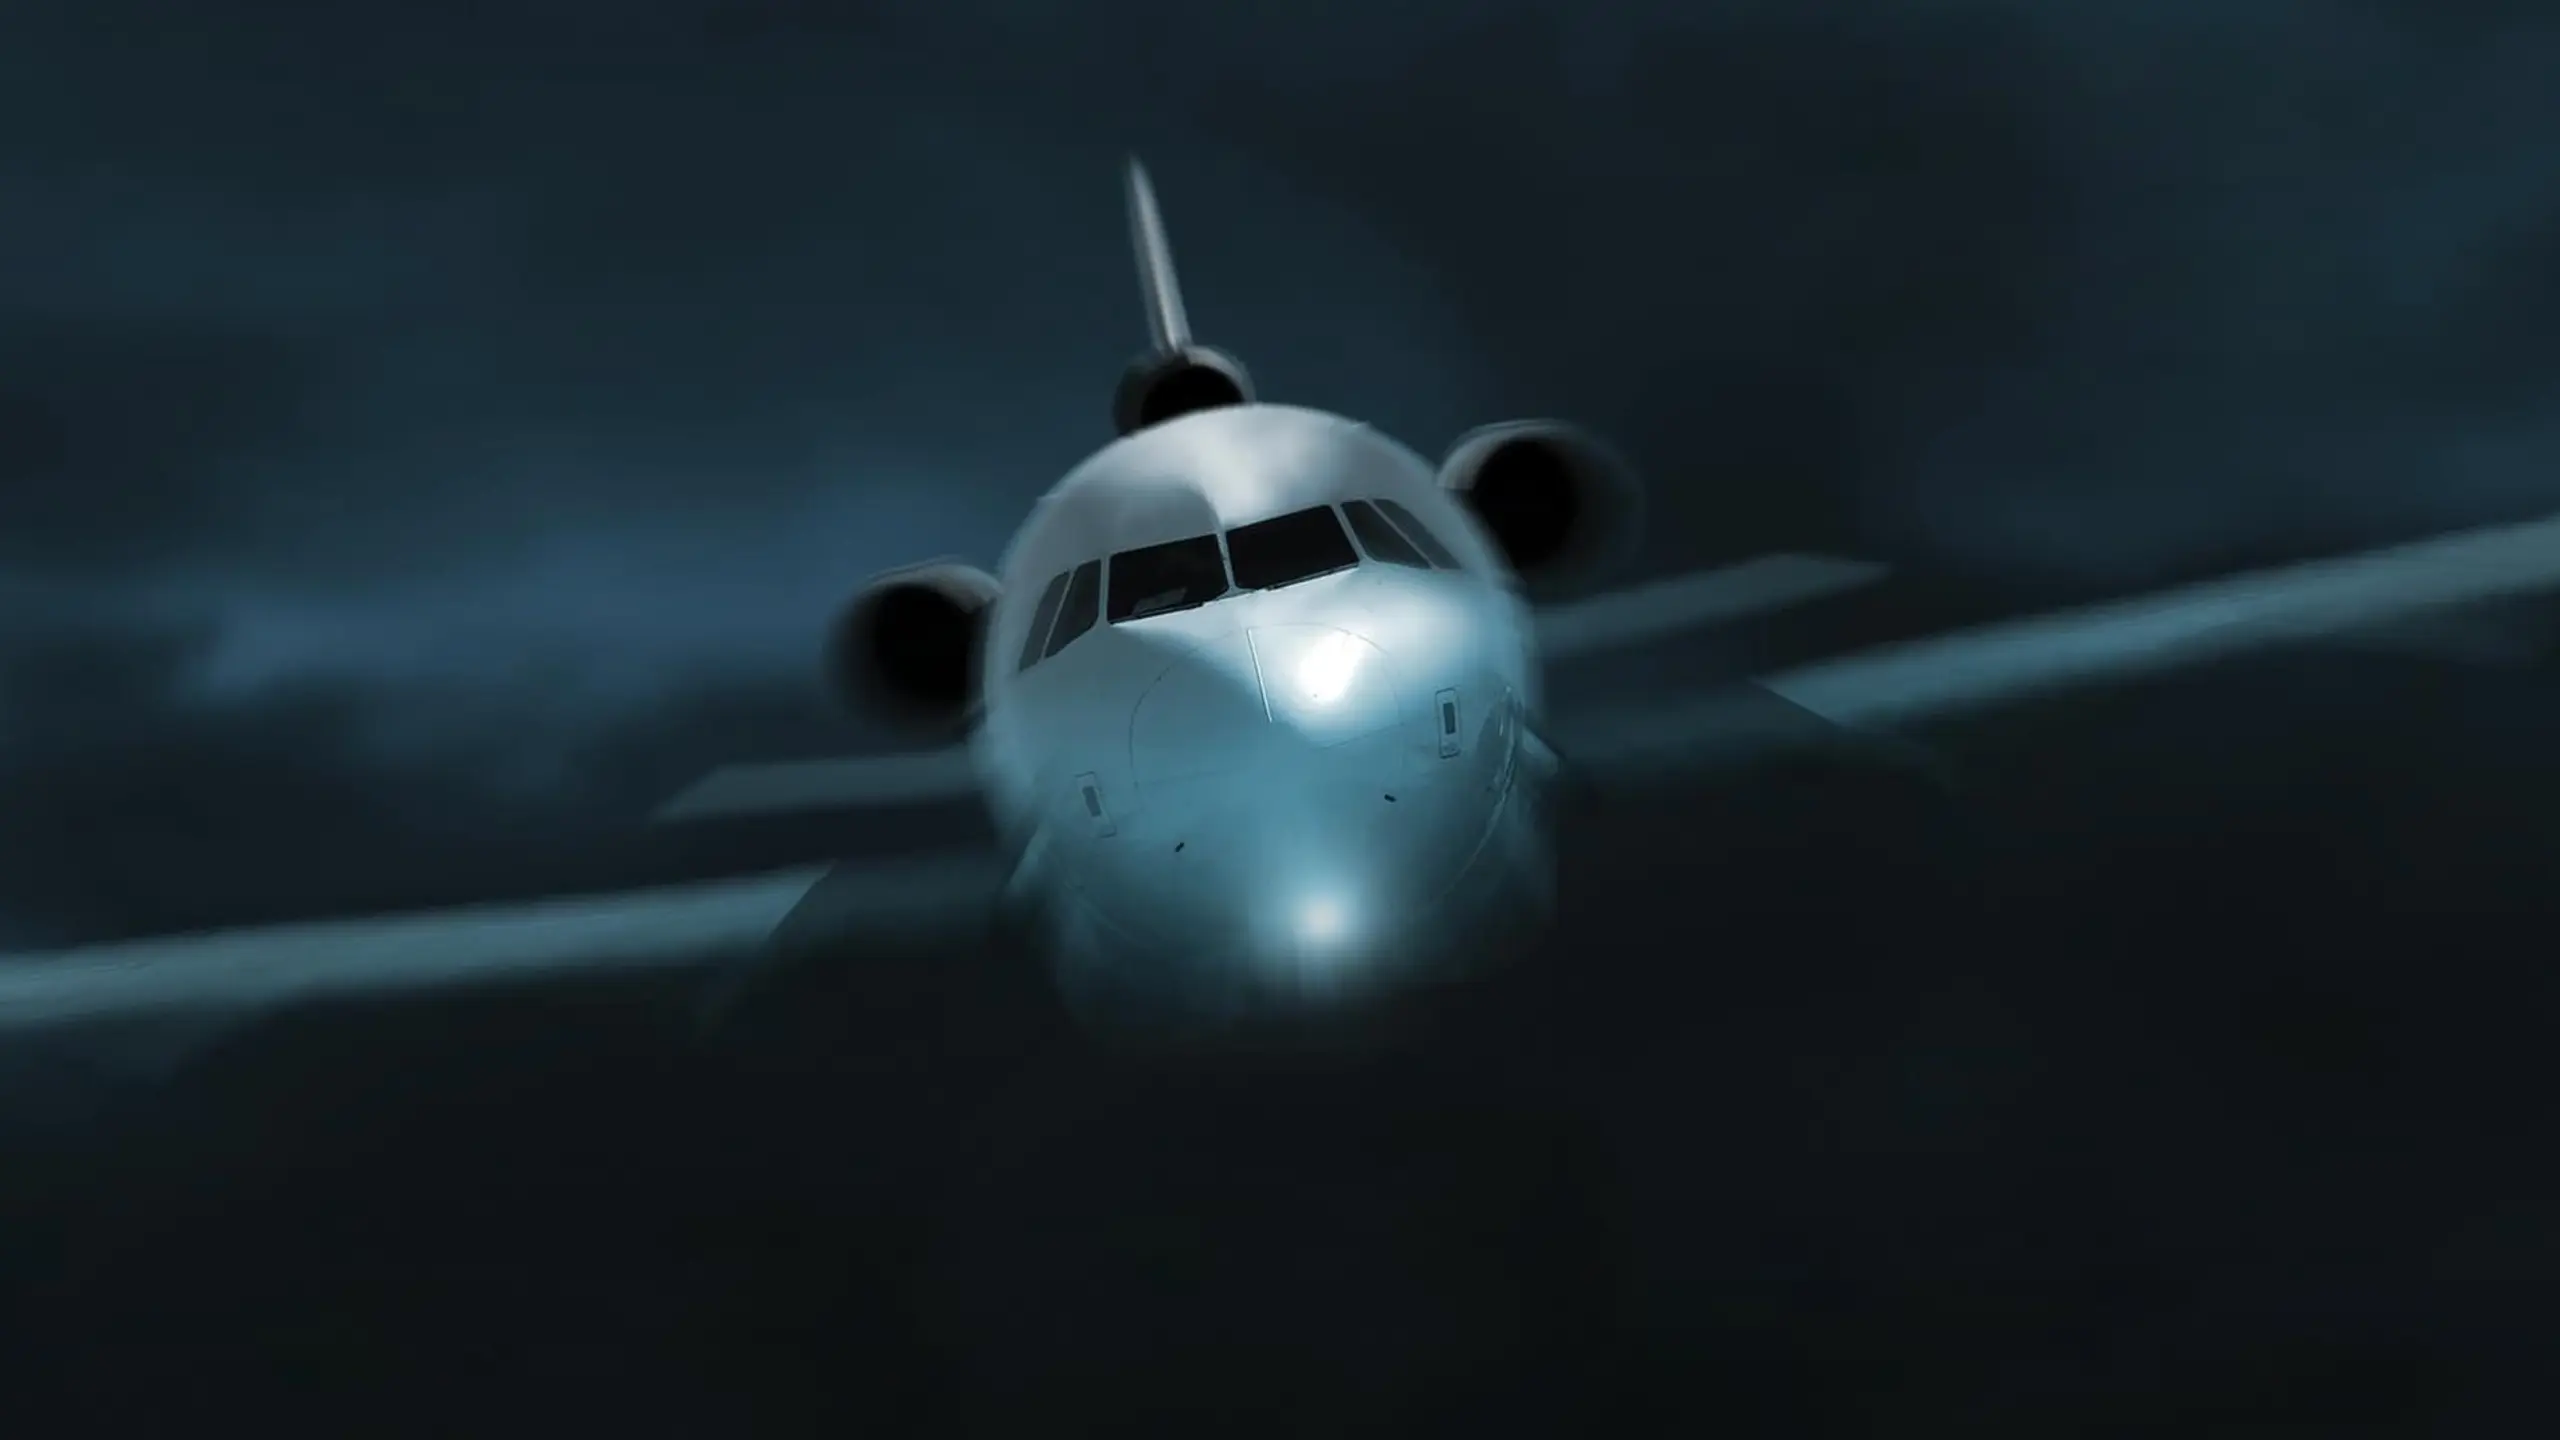 Missing - The last Flight